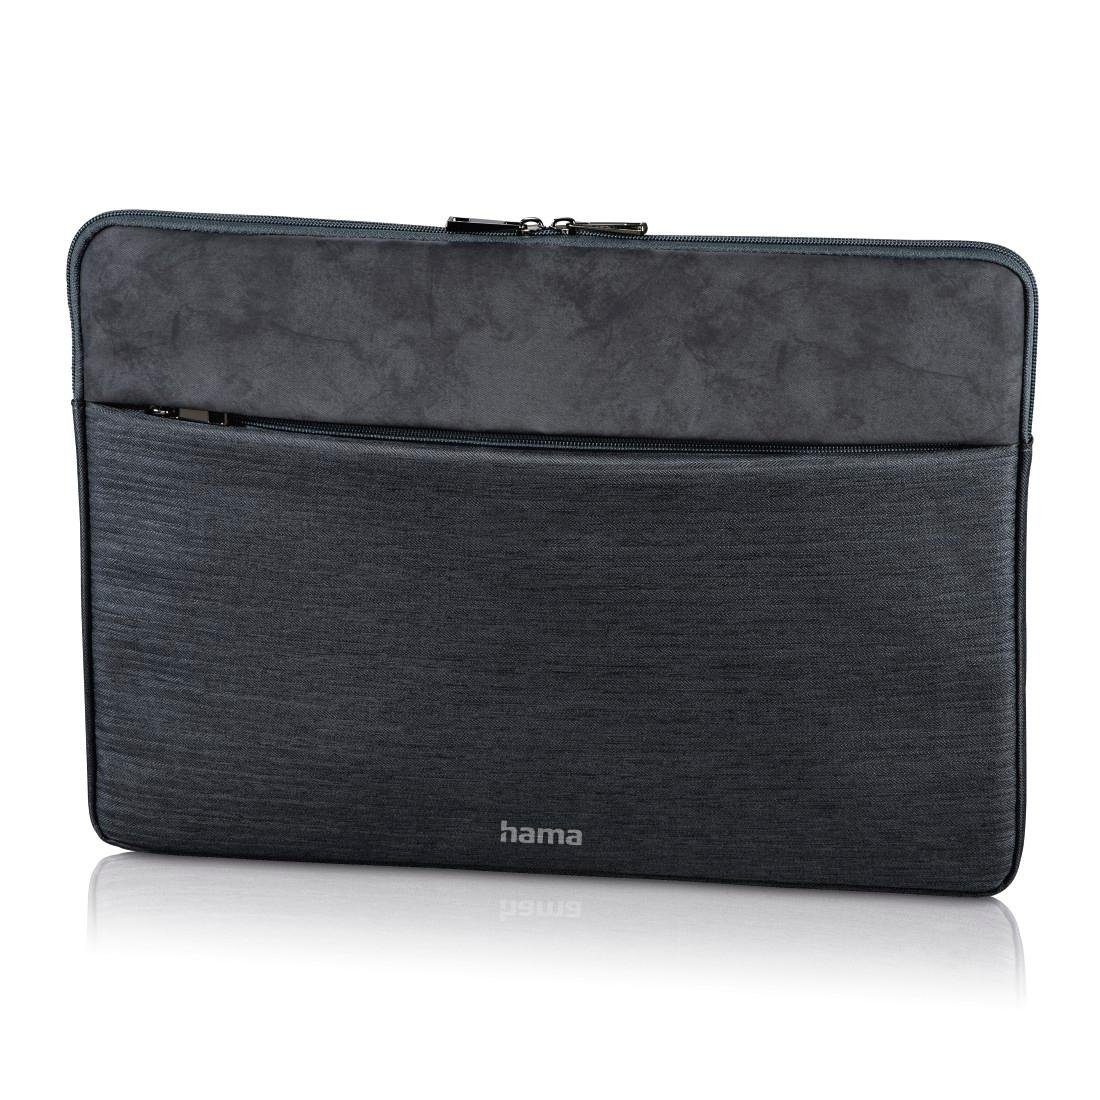 Hama Laptoptasche Laptop-Sleeve "Tayrona", bis 34 cm (13,3), Dunkelgrau Notebook Hülle | Businesstaschen